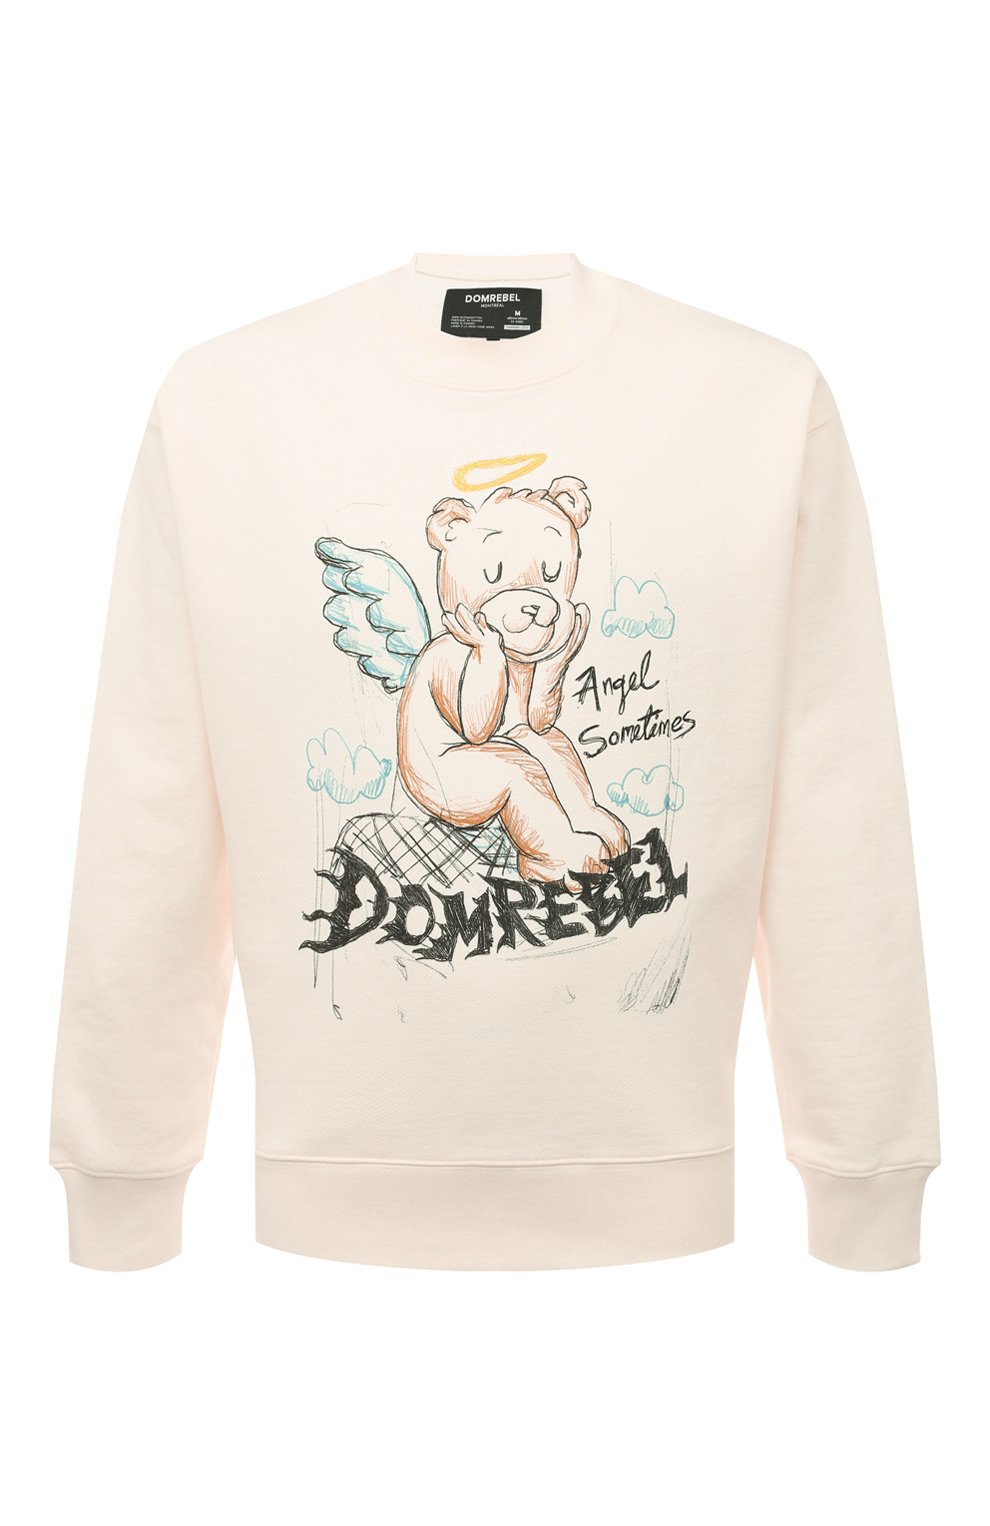 Хлопковый свитшот DOMREBEL ANGELBEAR/SWEATSHIRT, цвет кремовый, размер 54 ANGELBEAR/SWEATSHIRT - фото 1